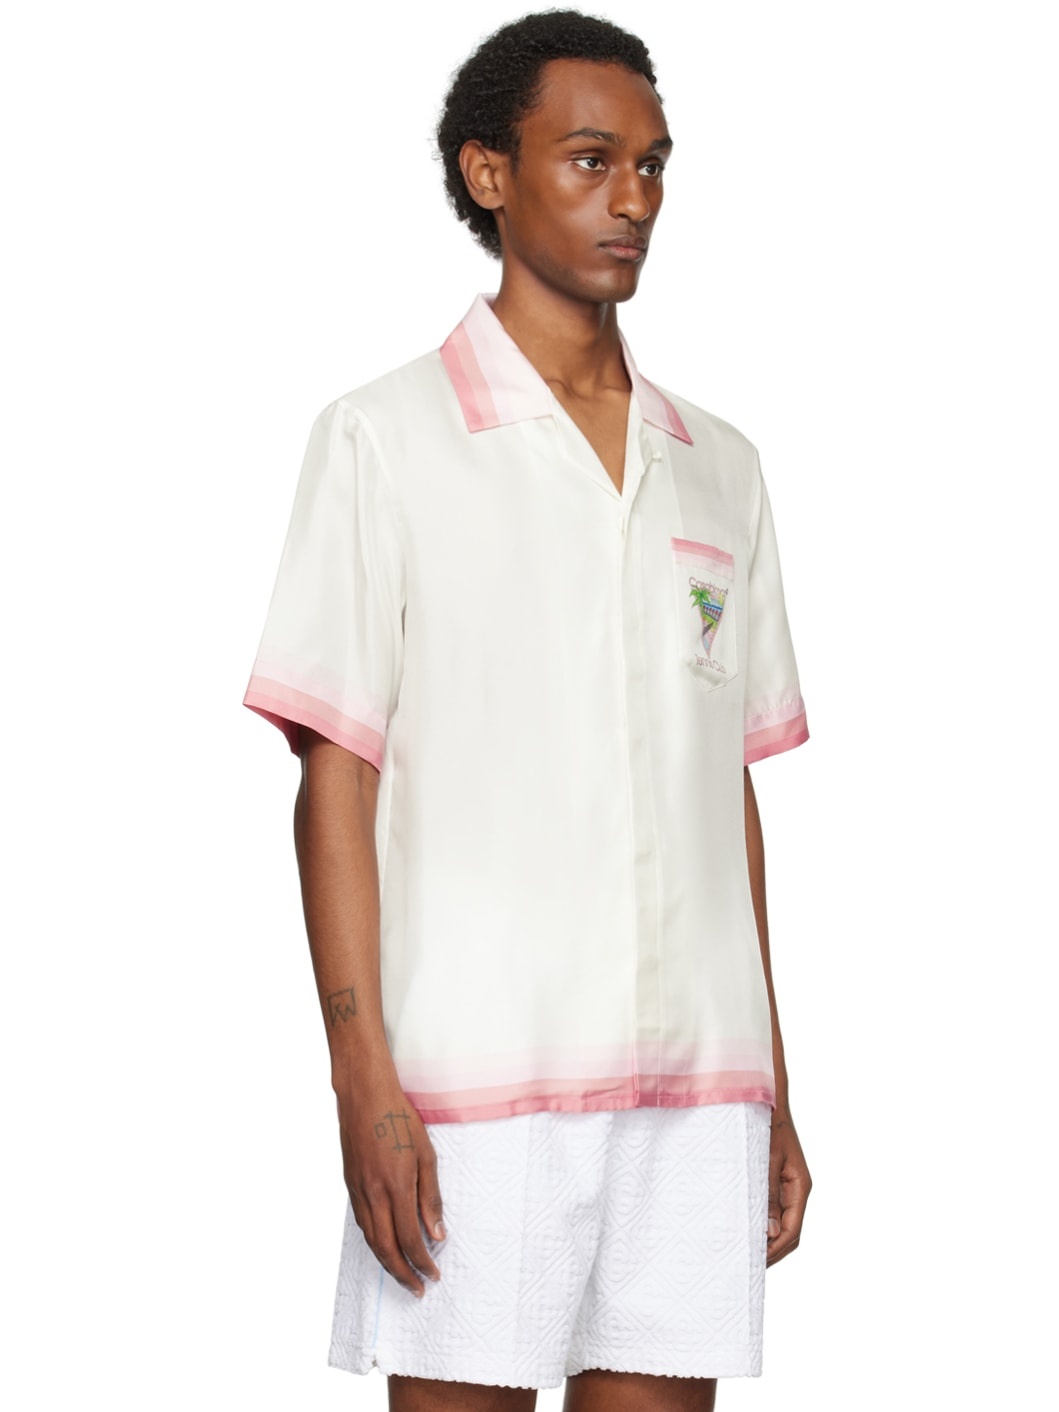 White & Pink 'Tennis Club' Icon Shirt - 2